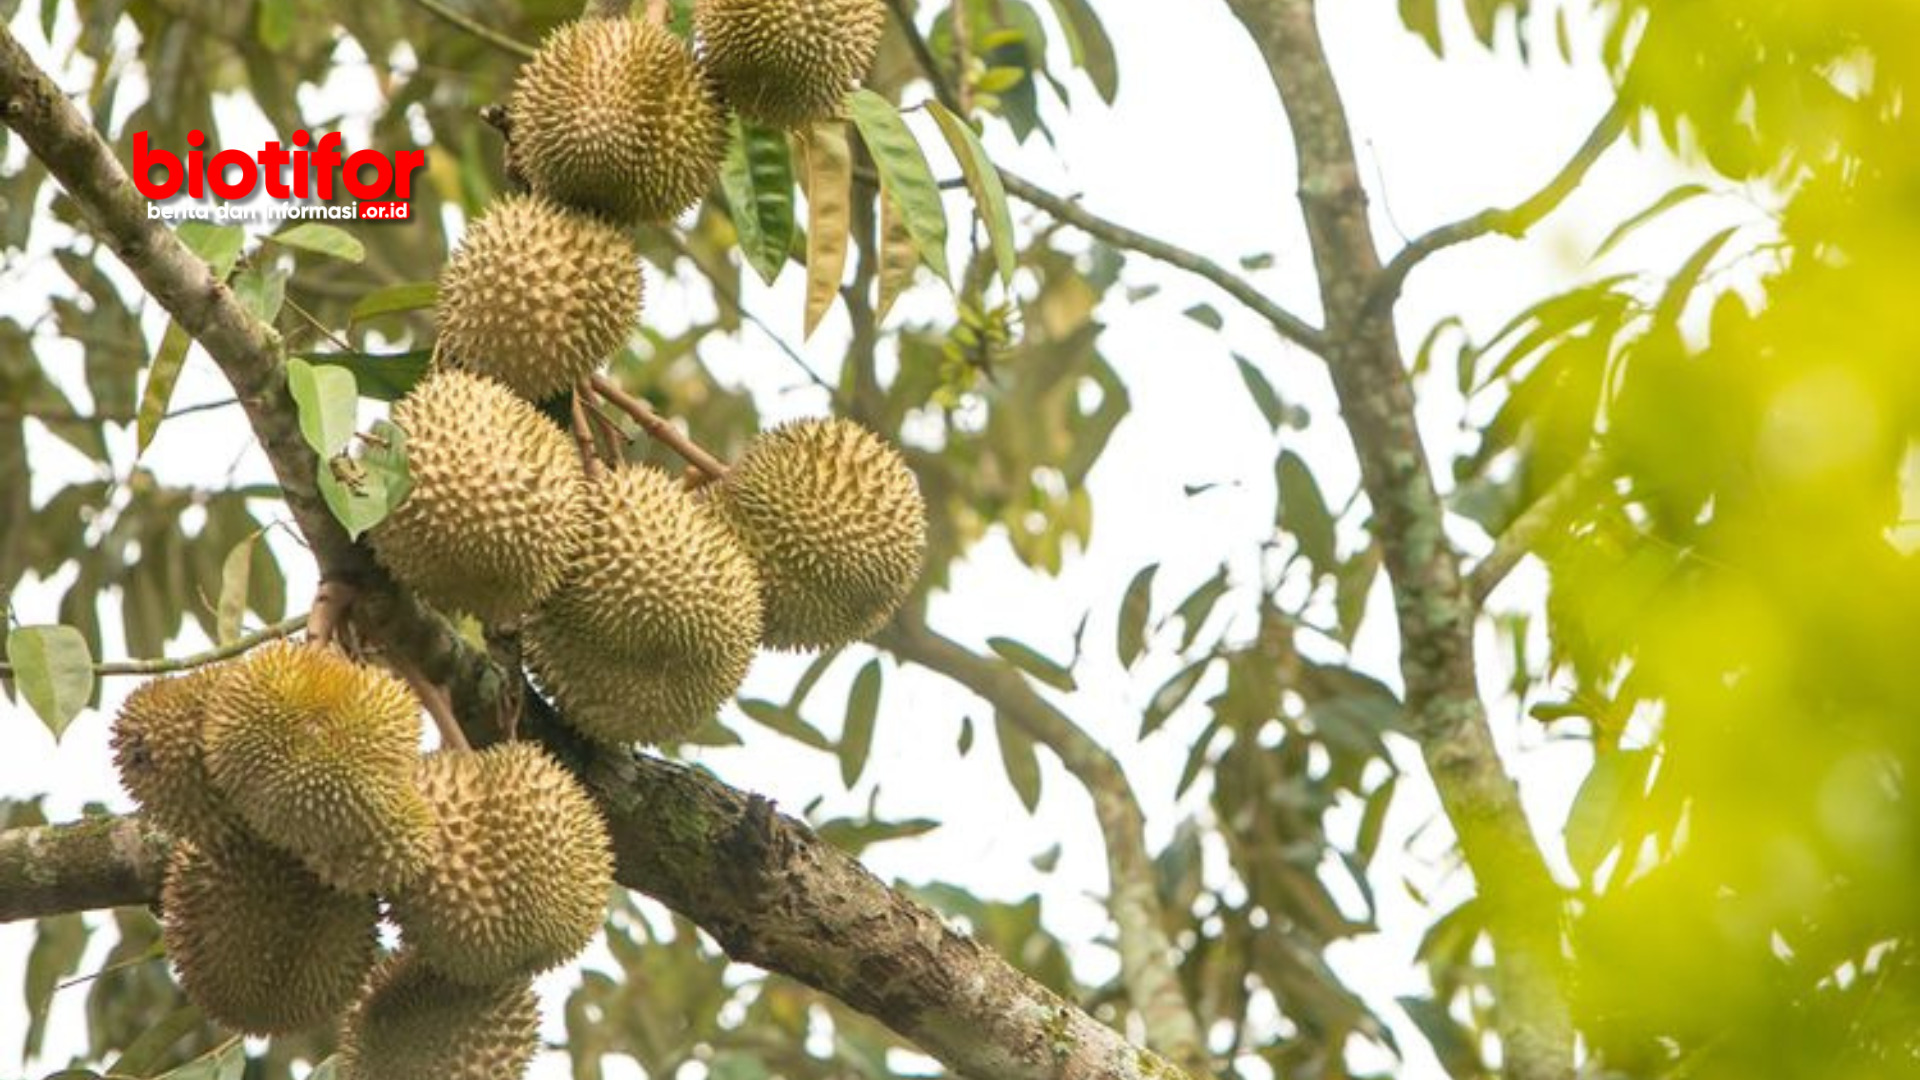 cara mempercepat pertumbuhan tanaman durian